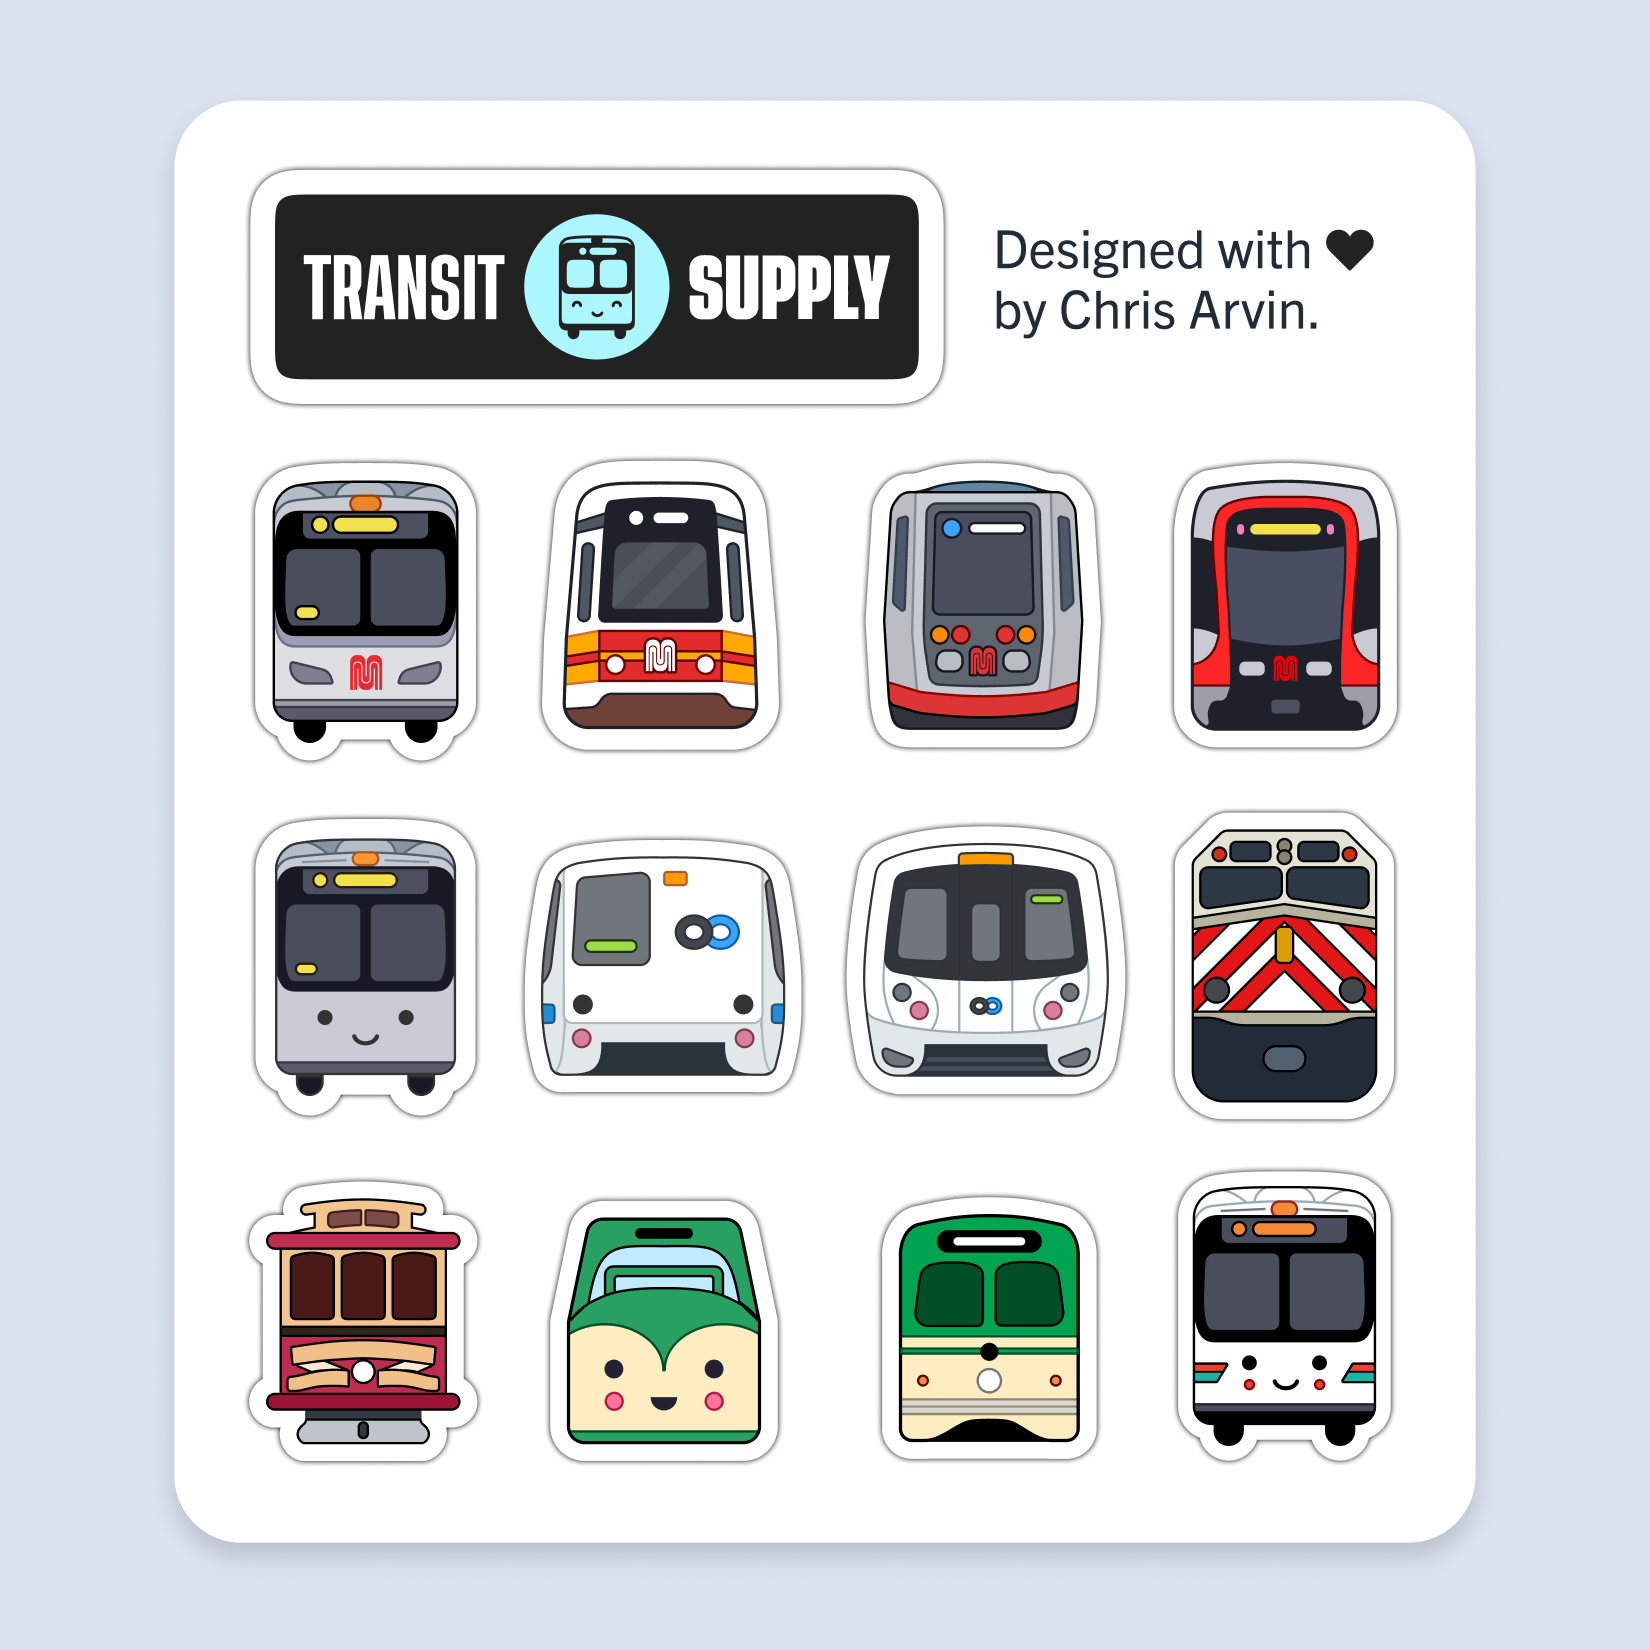 Magnet Sheet: Bay Area Transit